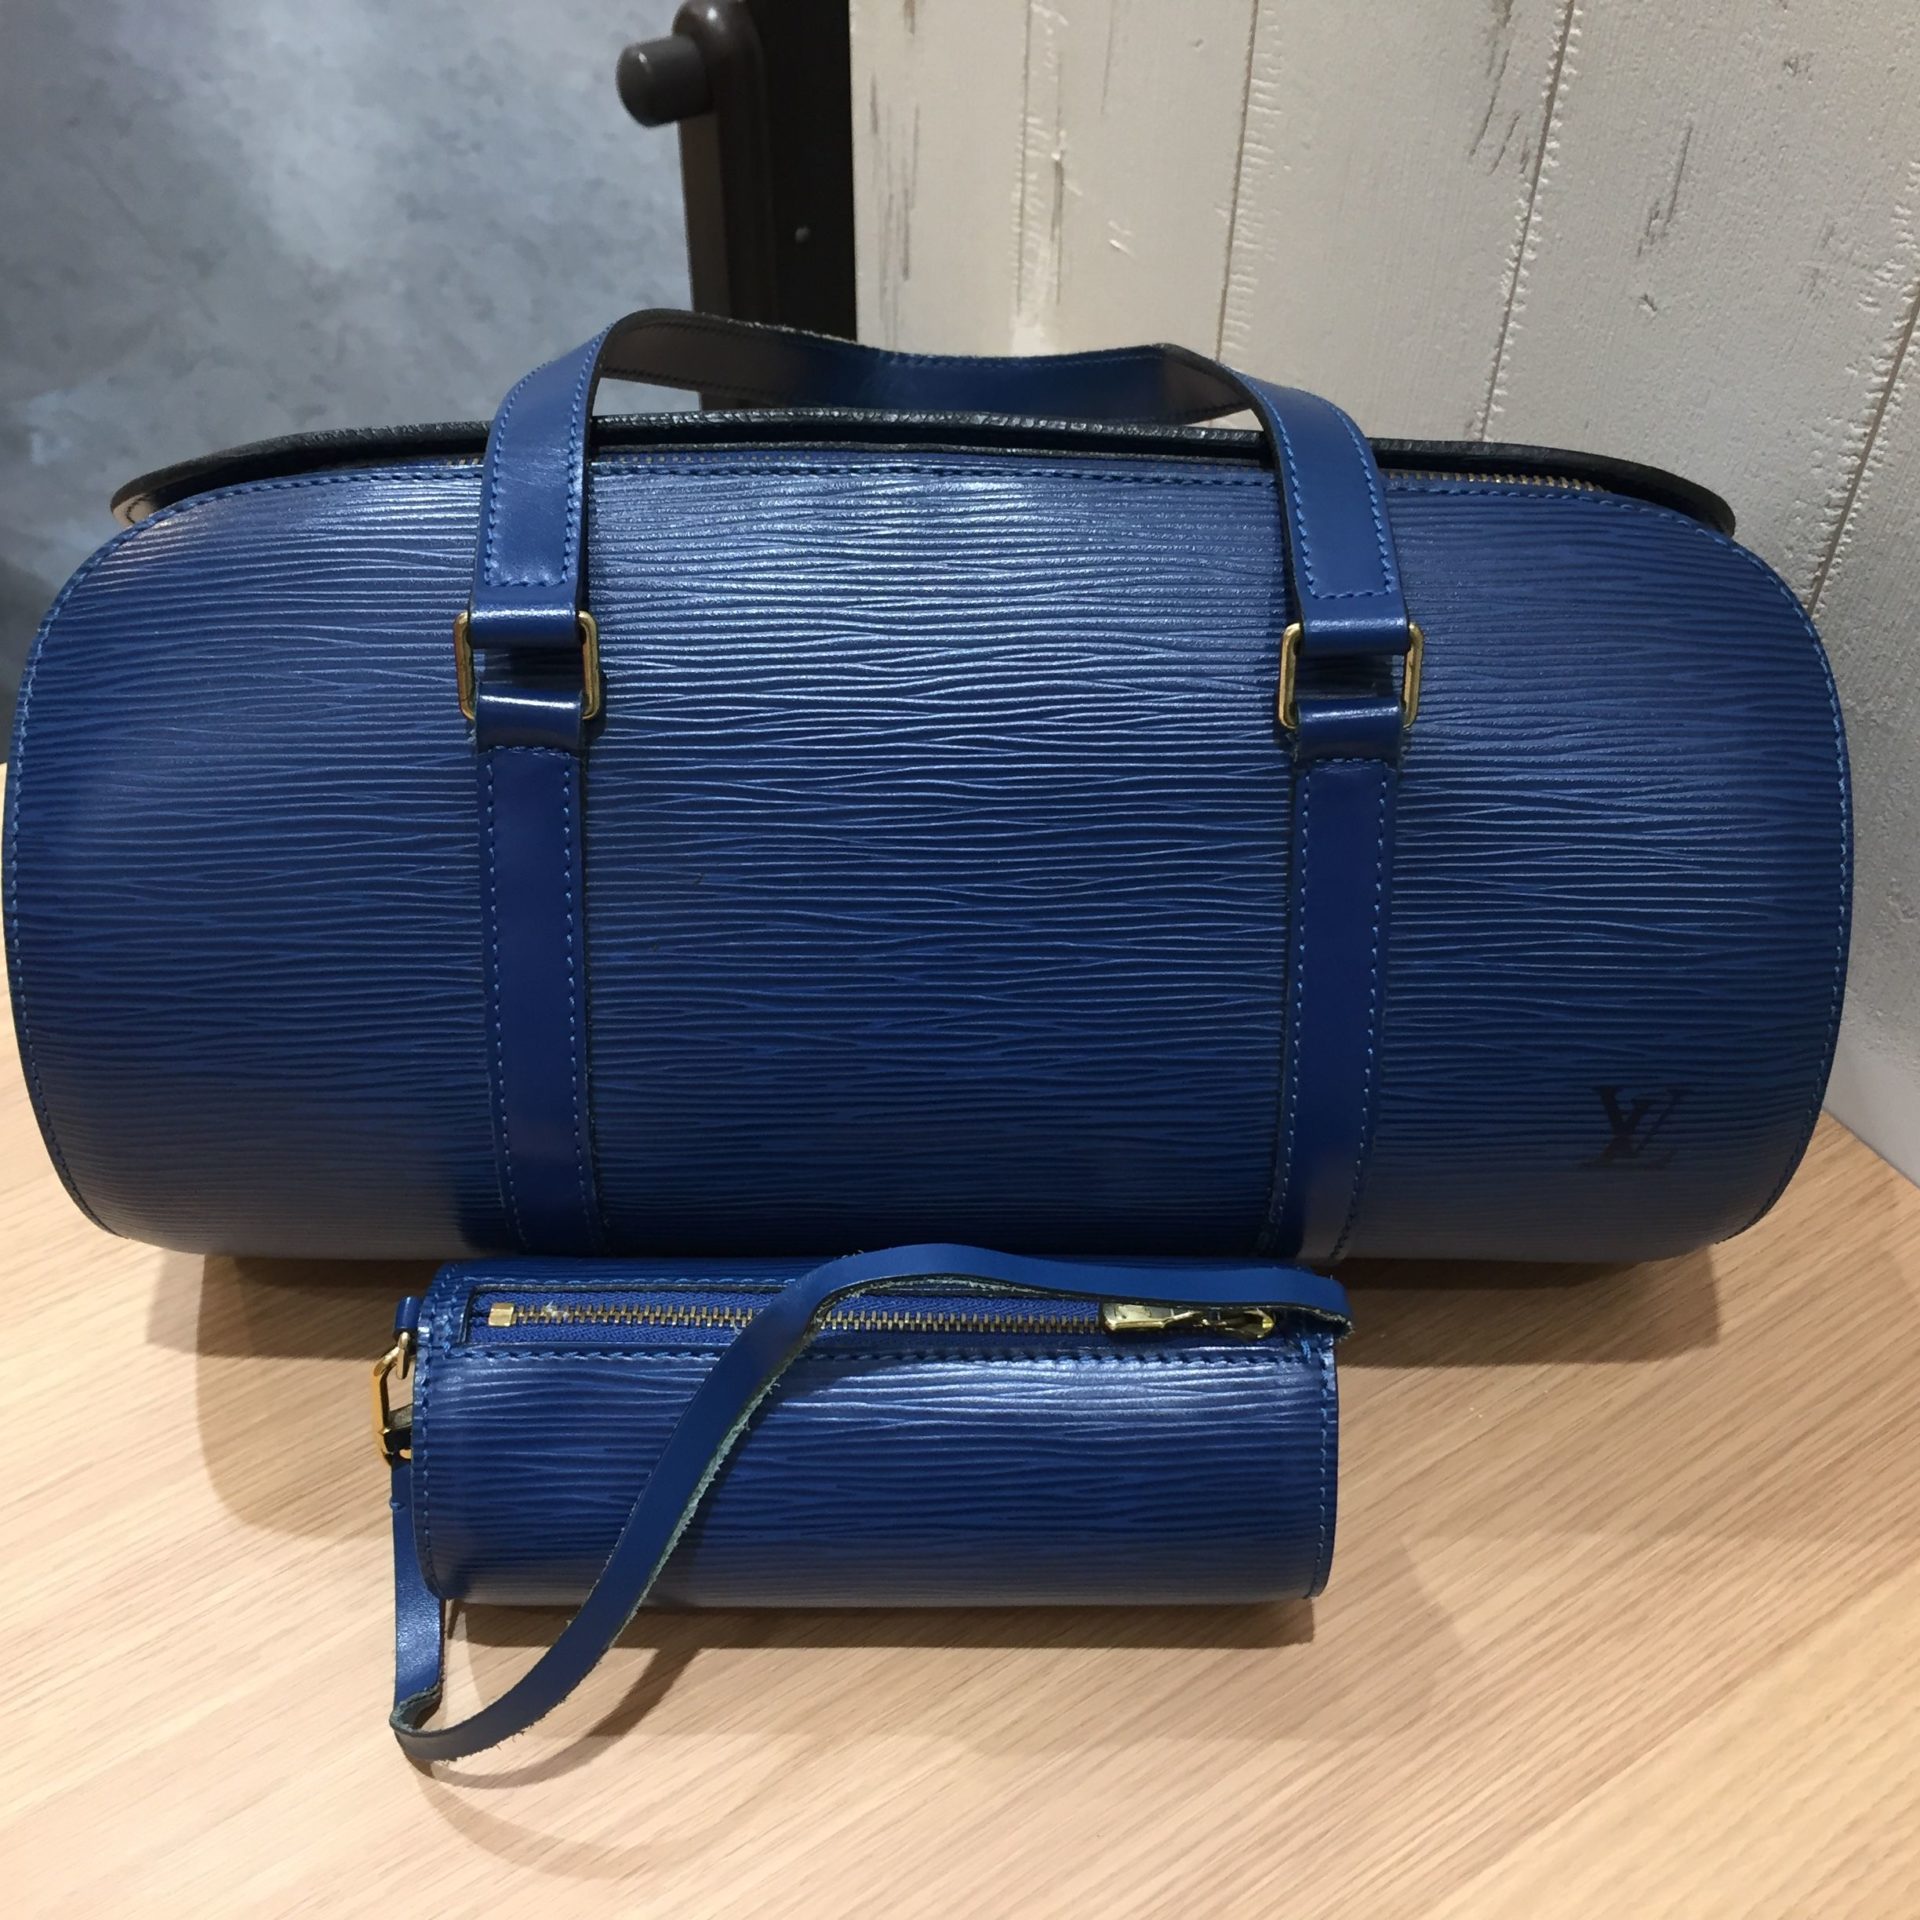 買取】深いブルーが素敵なバッグ、ルイヴィトン エピ スフロ  M52225をお買取り致しました。【かんてい局亀有店】葛飾区・足立区・墨田区・江戸川区・松戸市 | 質屋かんてい局 亀有店